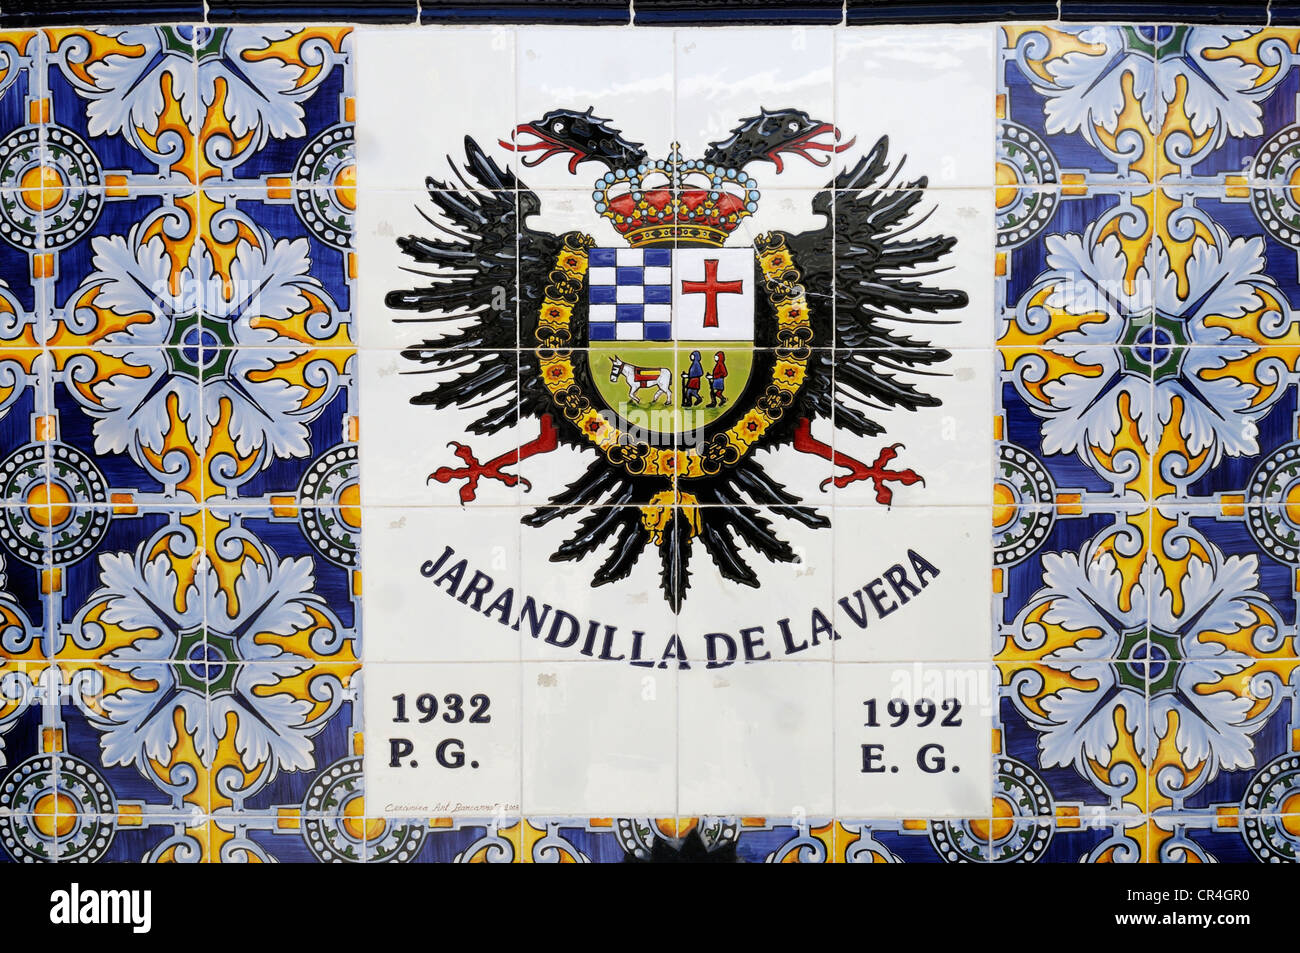 Coat of arms of Jarandilla de la Vera, Sierra de Gredos, Extremadura, Spain, Europe Stock Photo